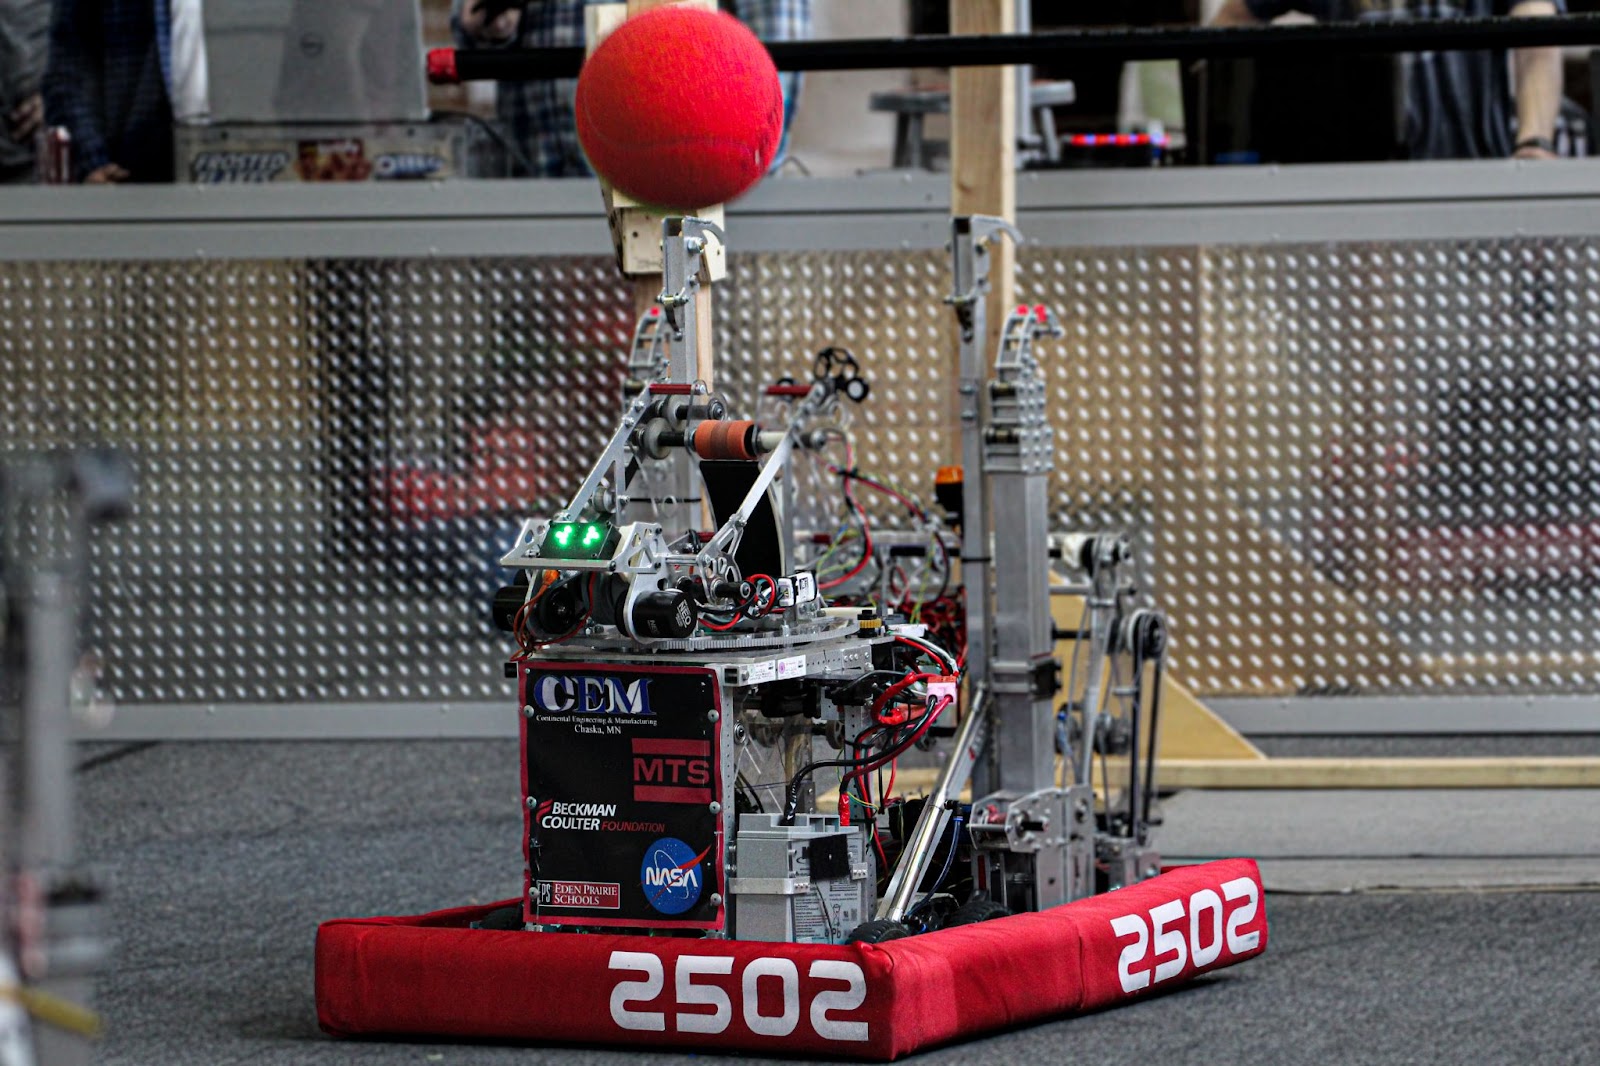 the robot shooting a ball